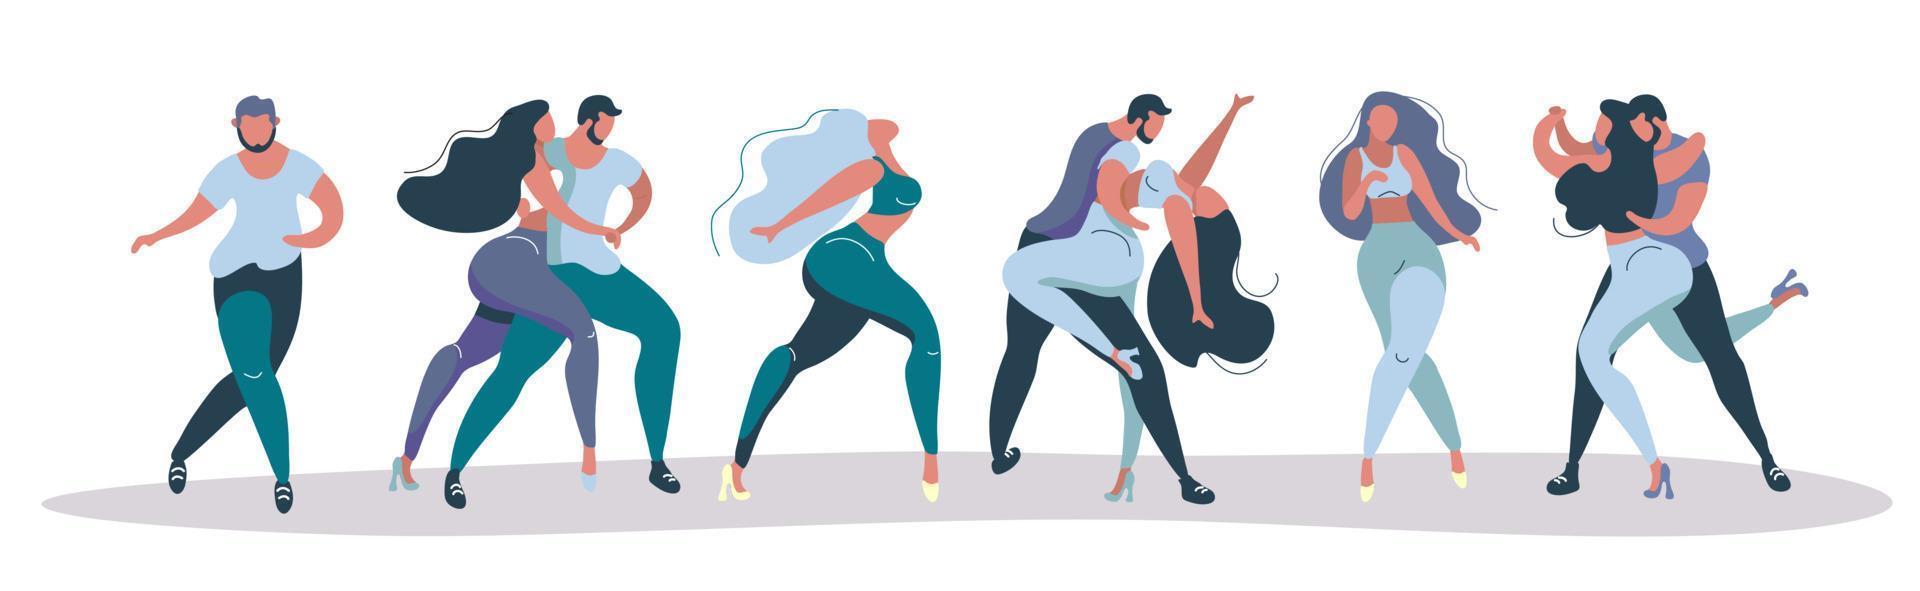 un ensemble d'affiches vectorielles sur le thème des danses latines. l'illustration convient pour une affiche, un flyer de l'événement. également applicable pour d'autres danses salsa, kizomba, merengue et autres vecteur